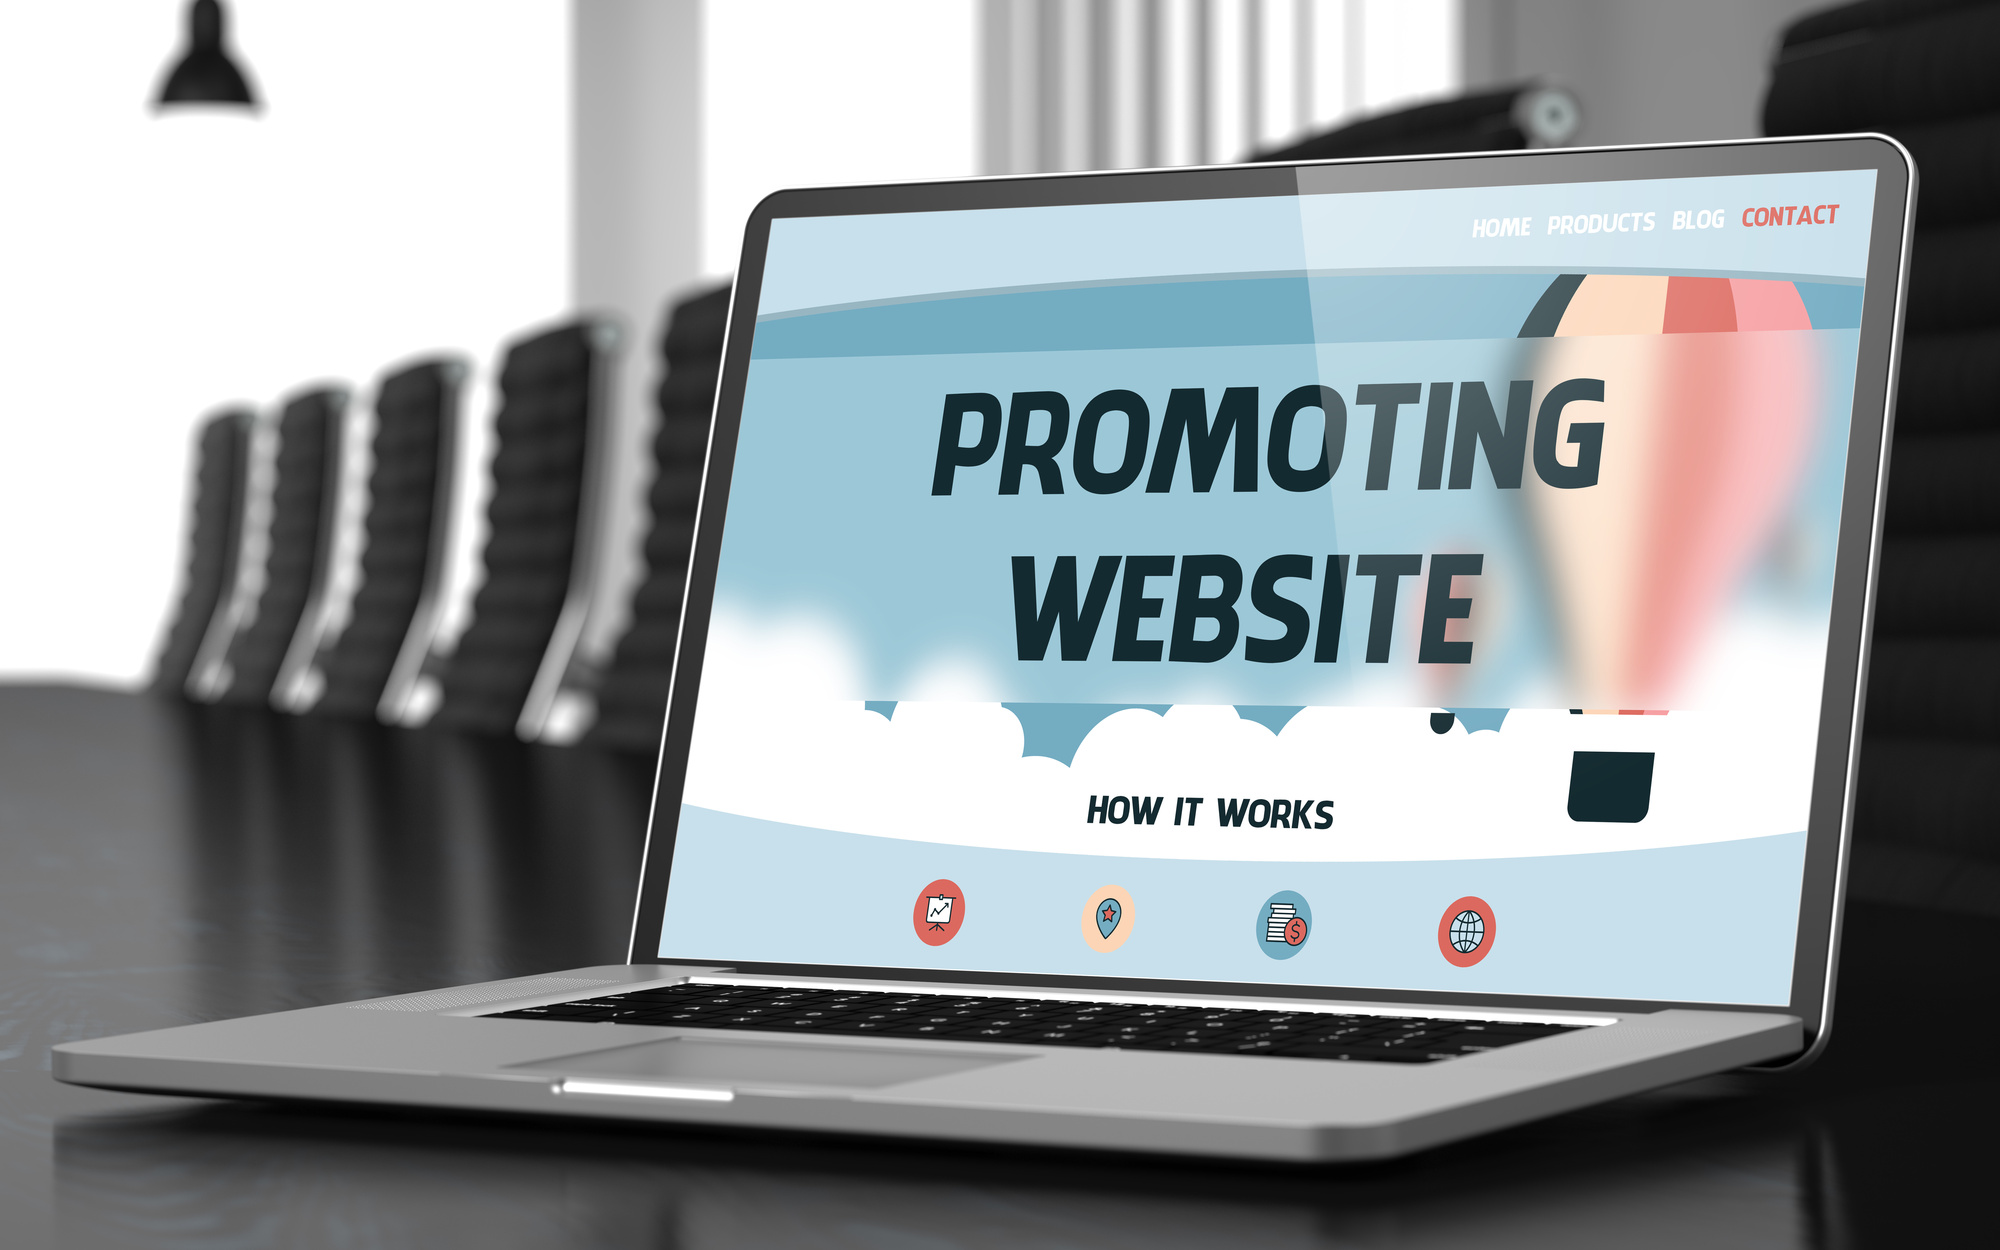 website promotion